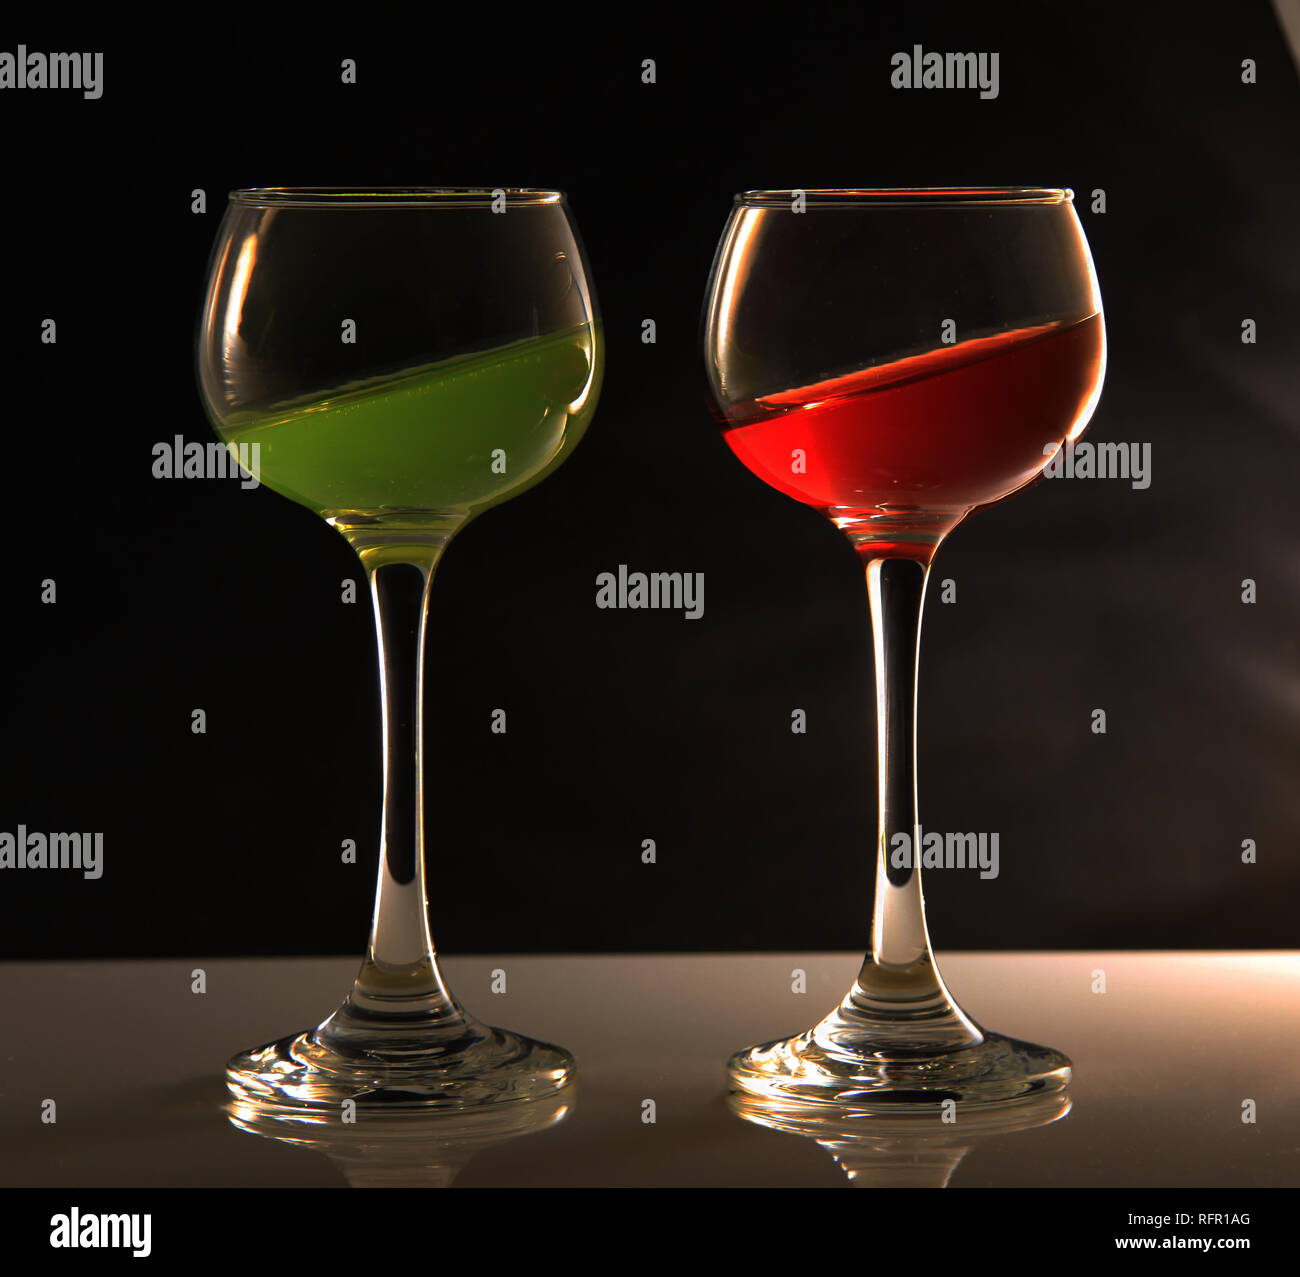 Verres à vin avec des liquides de différentes couleurs à un angle incliné Banque D'Images